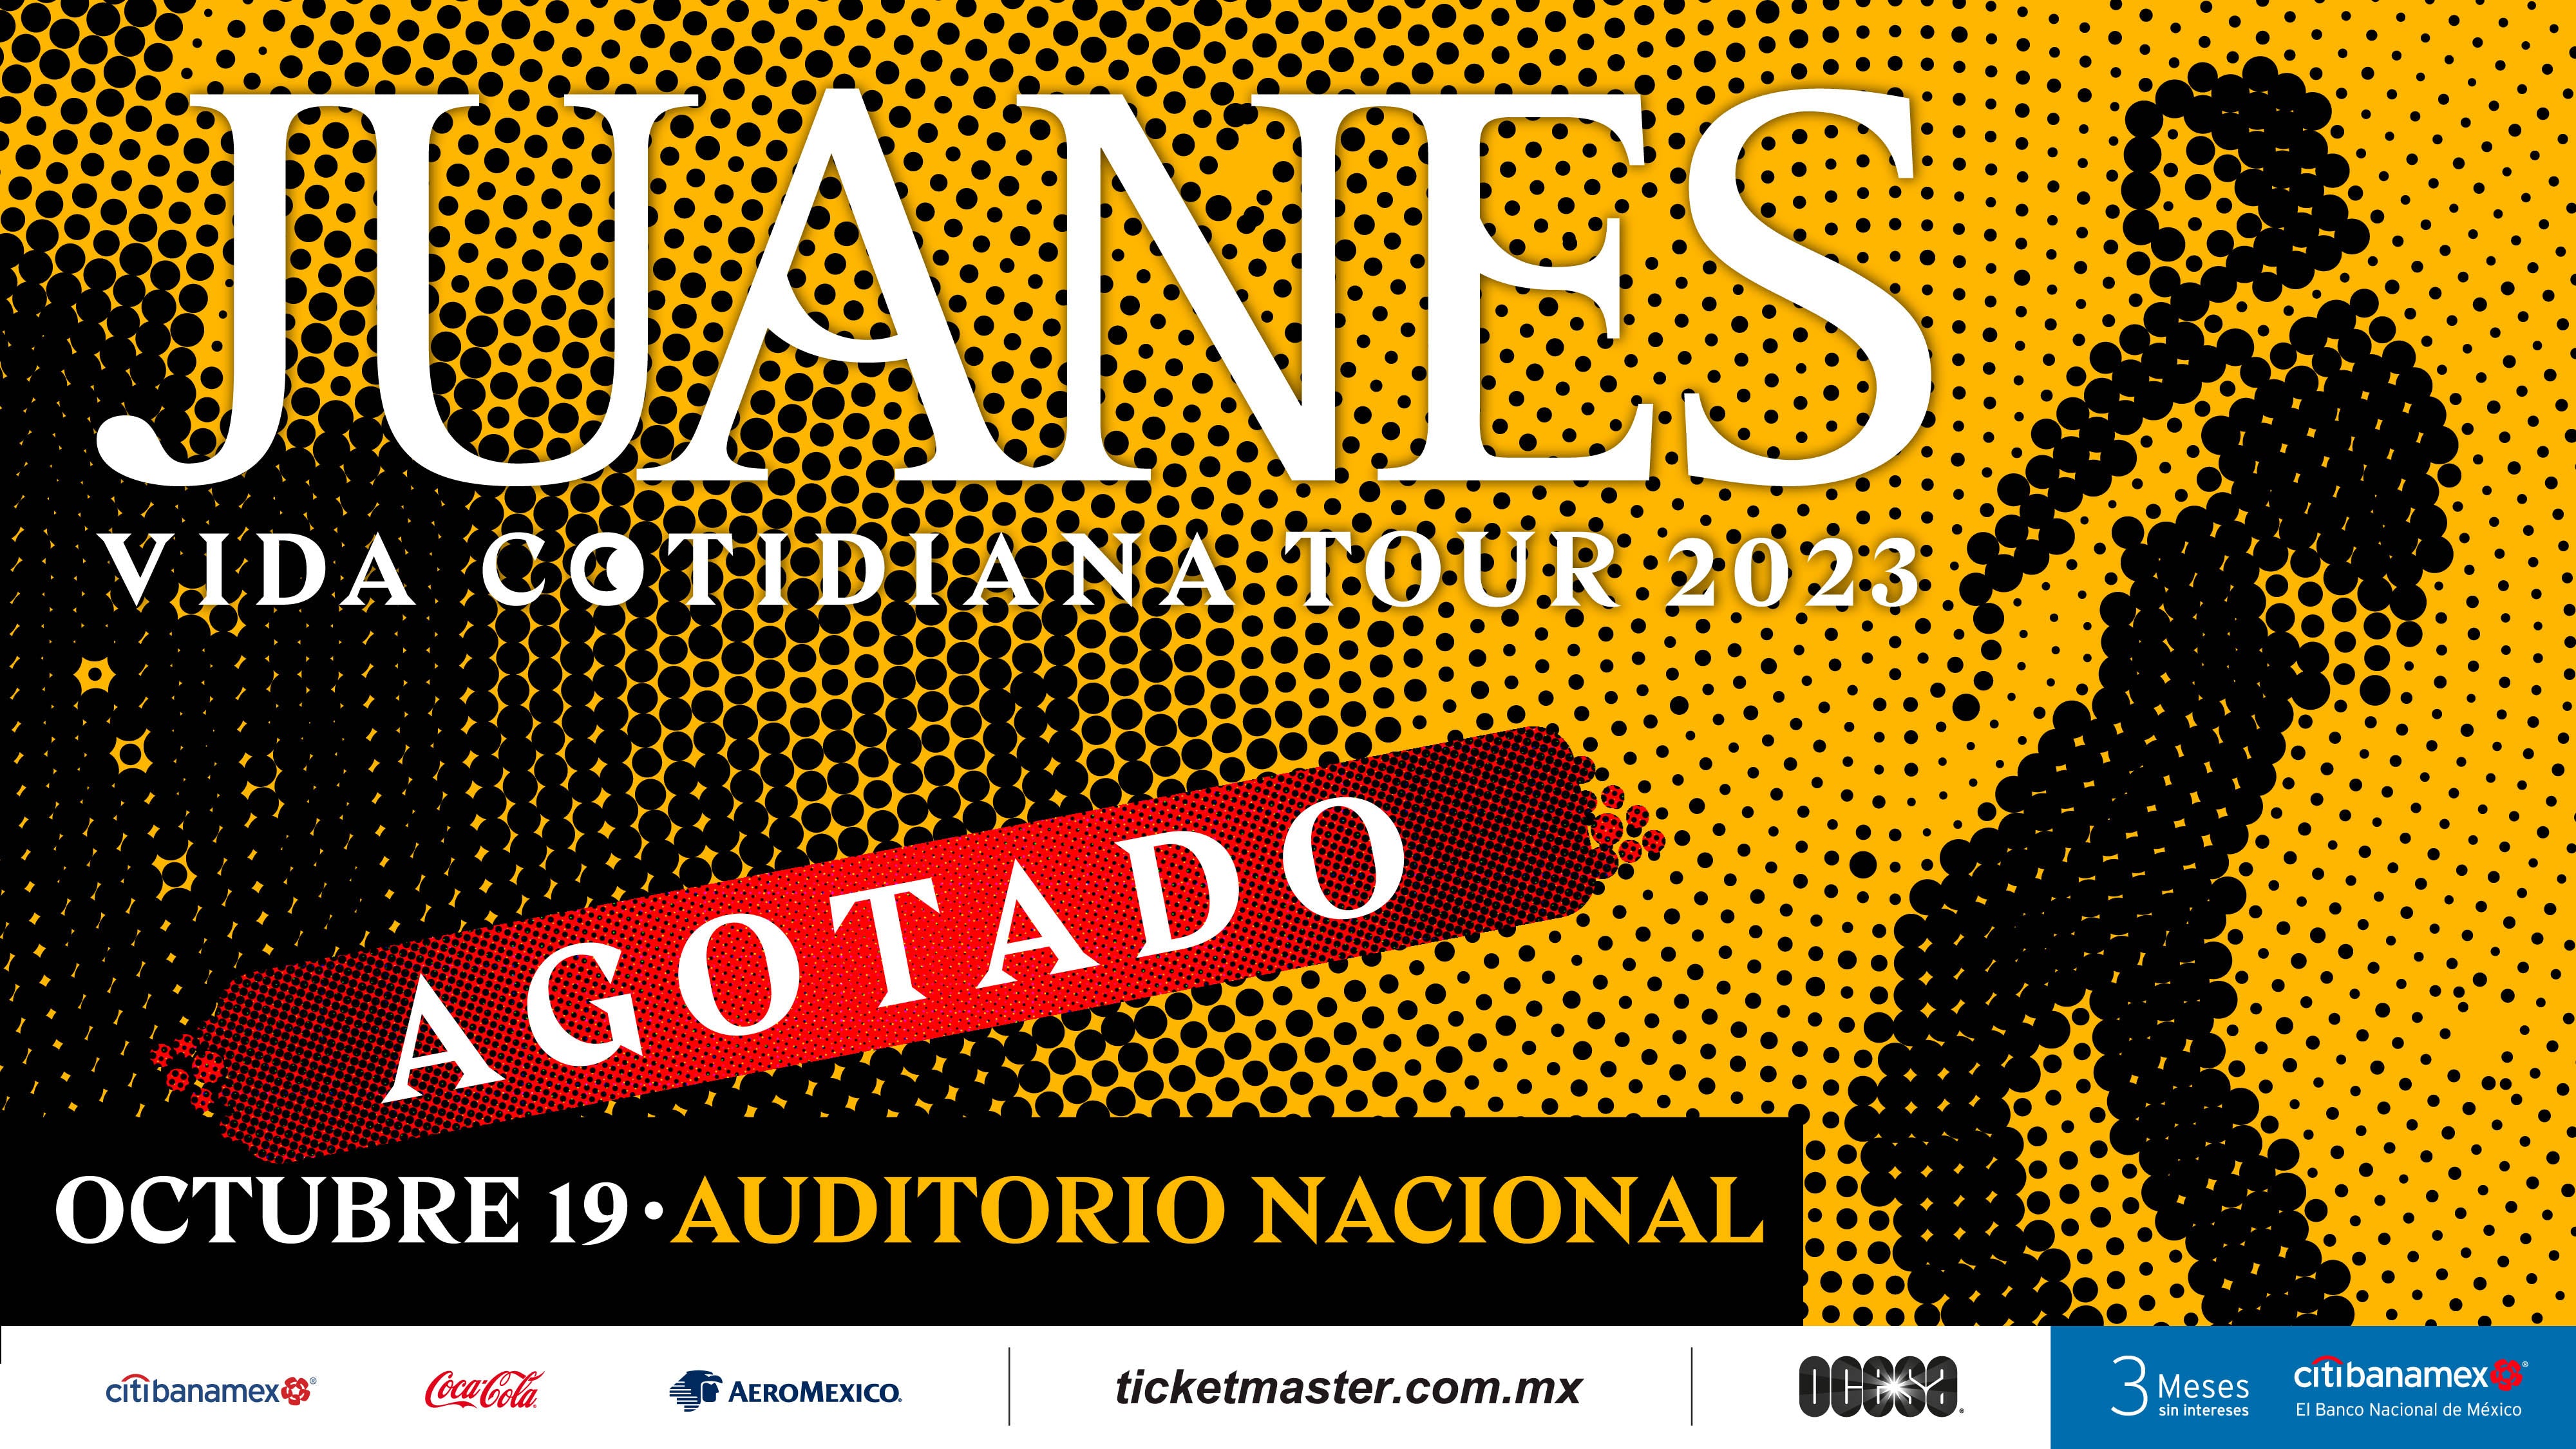 Juanes regresa con Sold Out en Auditorio Nacional